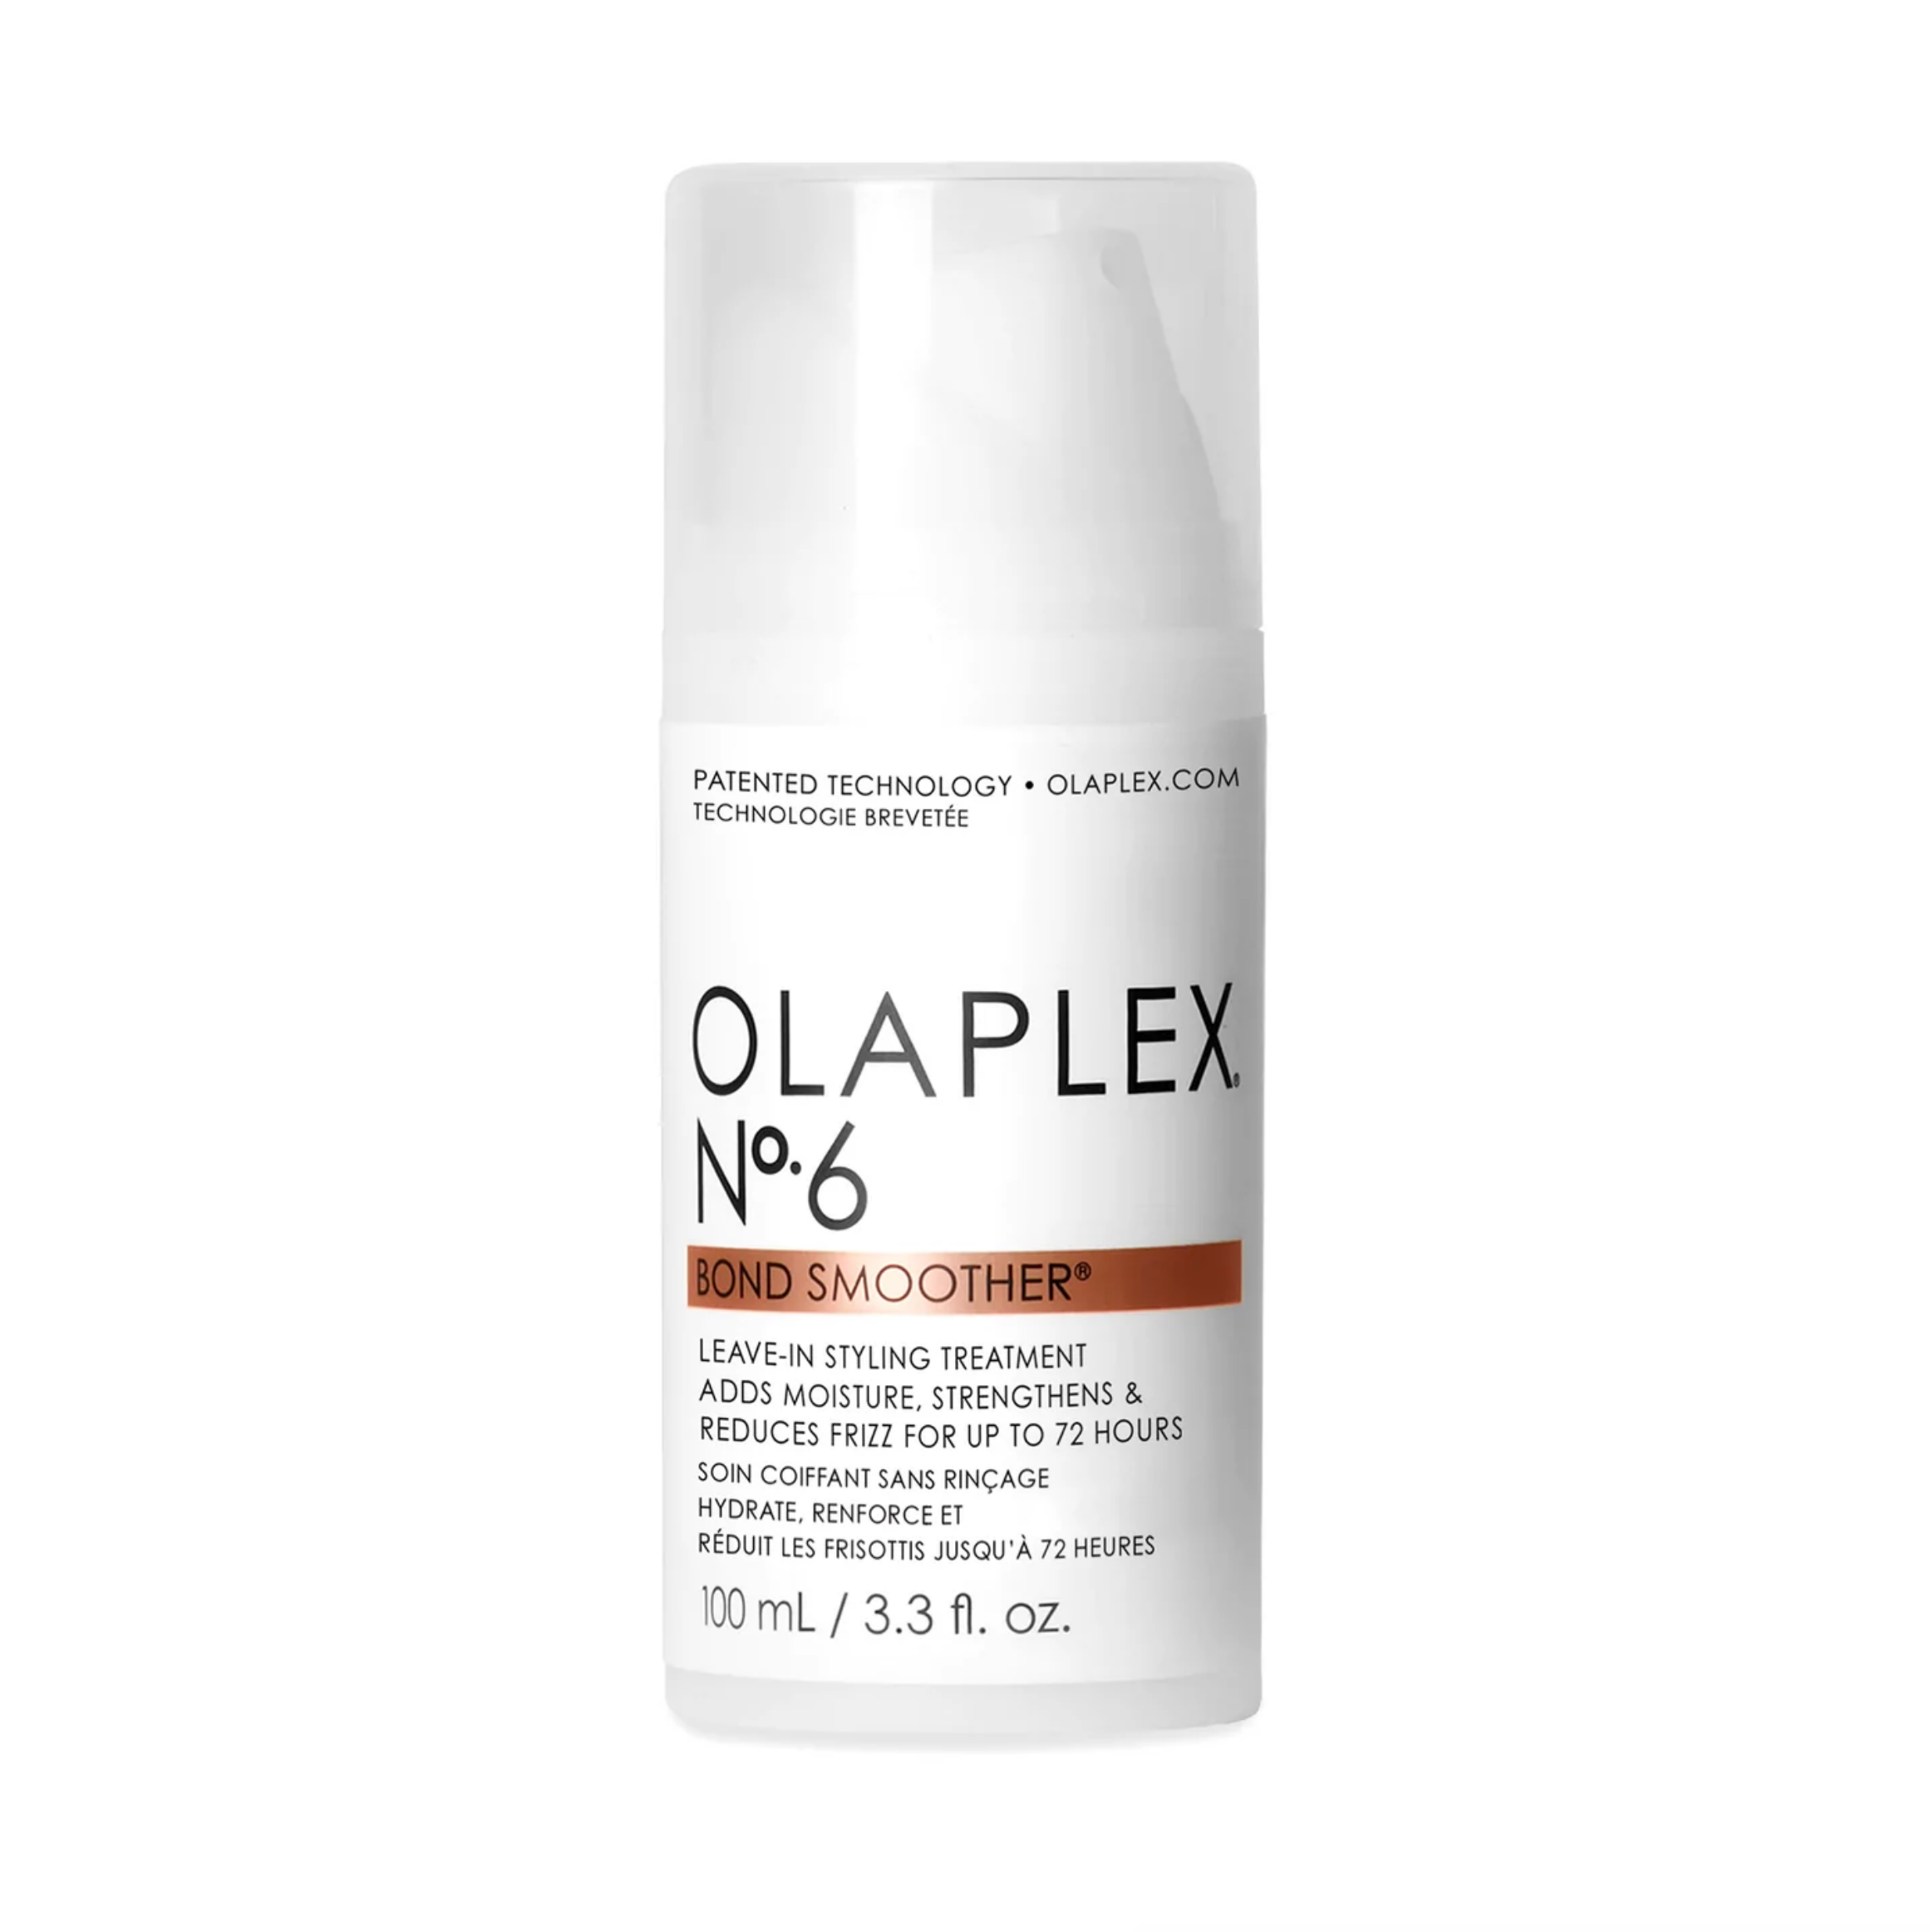 Soin coiffant sans rinçage hydrate et renforce Olaplex N°6 Bond smoother - Crème Salon